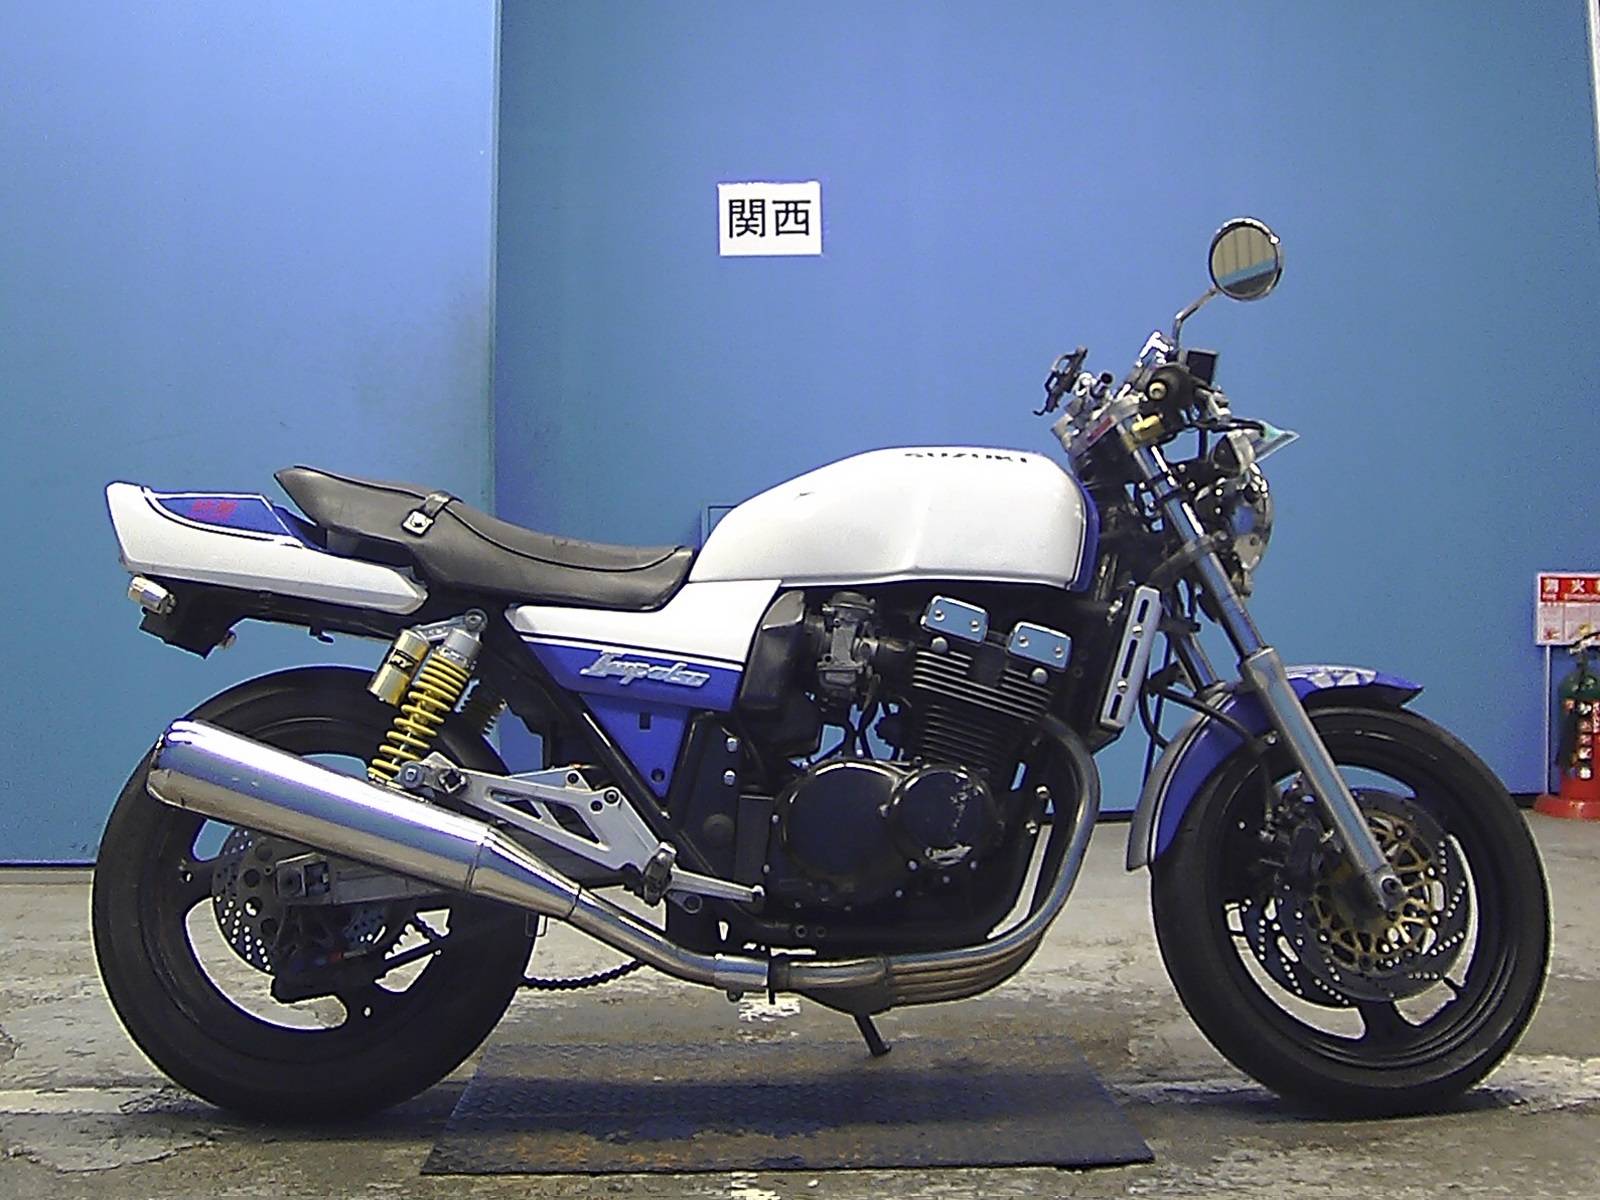 Suzuki gsx 400 impulse - обзор, технические характеристики | mymot - каталог мотоциклов и все объявления об их продаже в одном месте